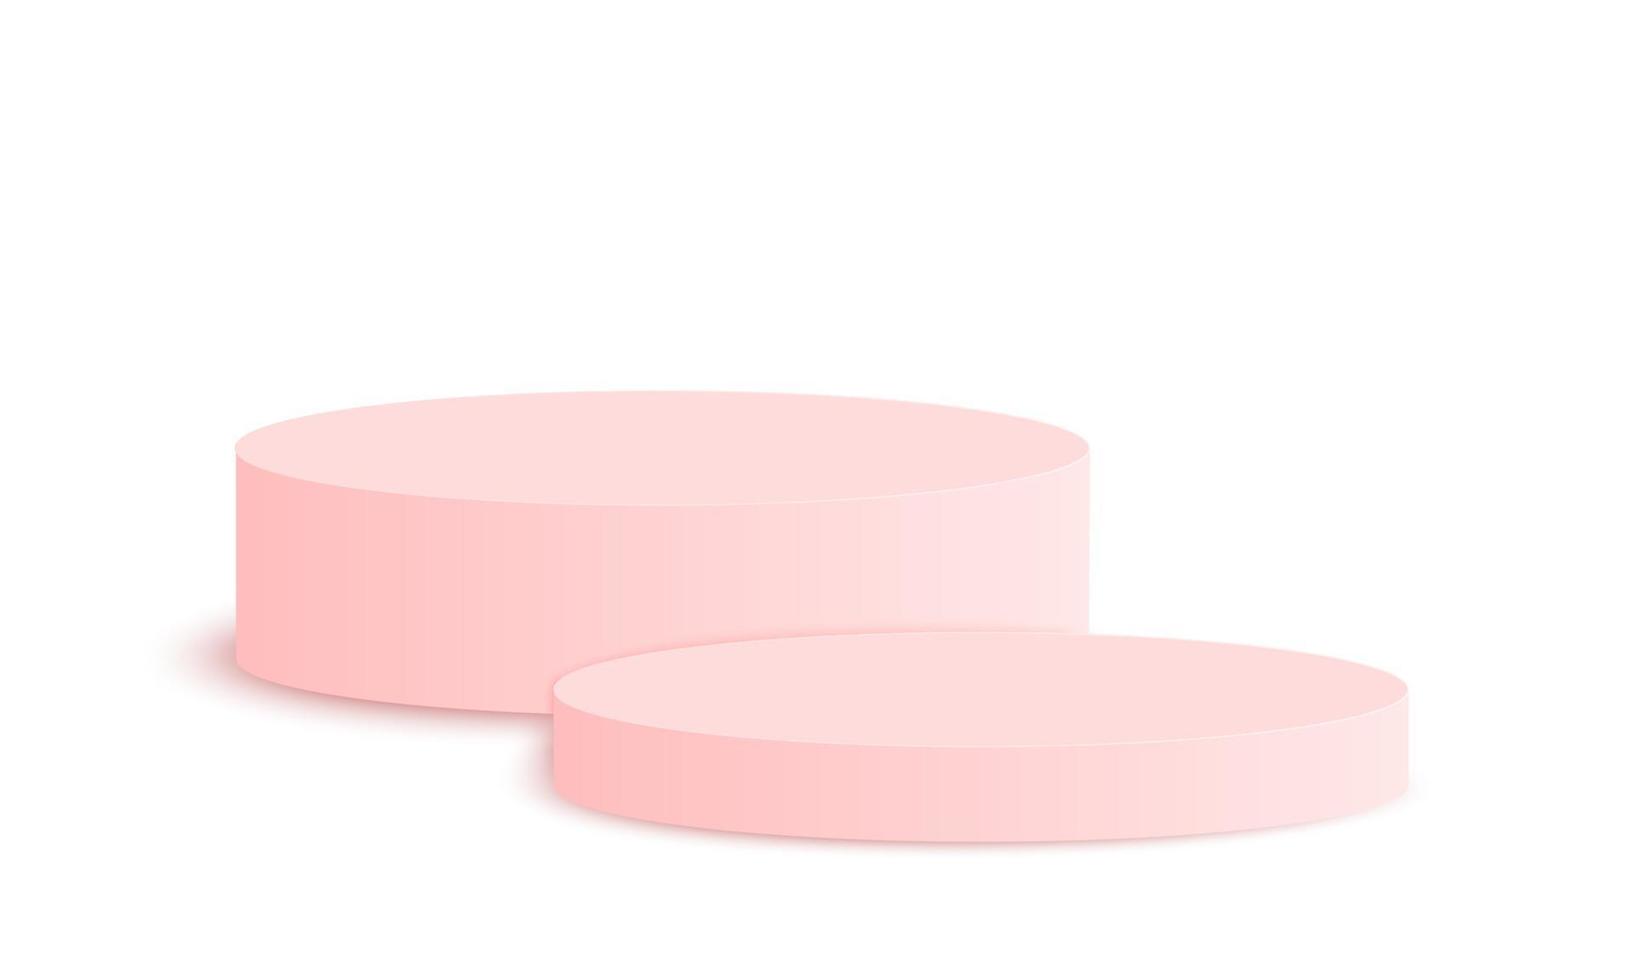 podios redondos de color rosa. maqueta de pedestal vacío para cosméticos, presentación de productos. plataforma de exhibición cilíndrica limpia vector